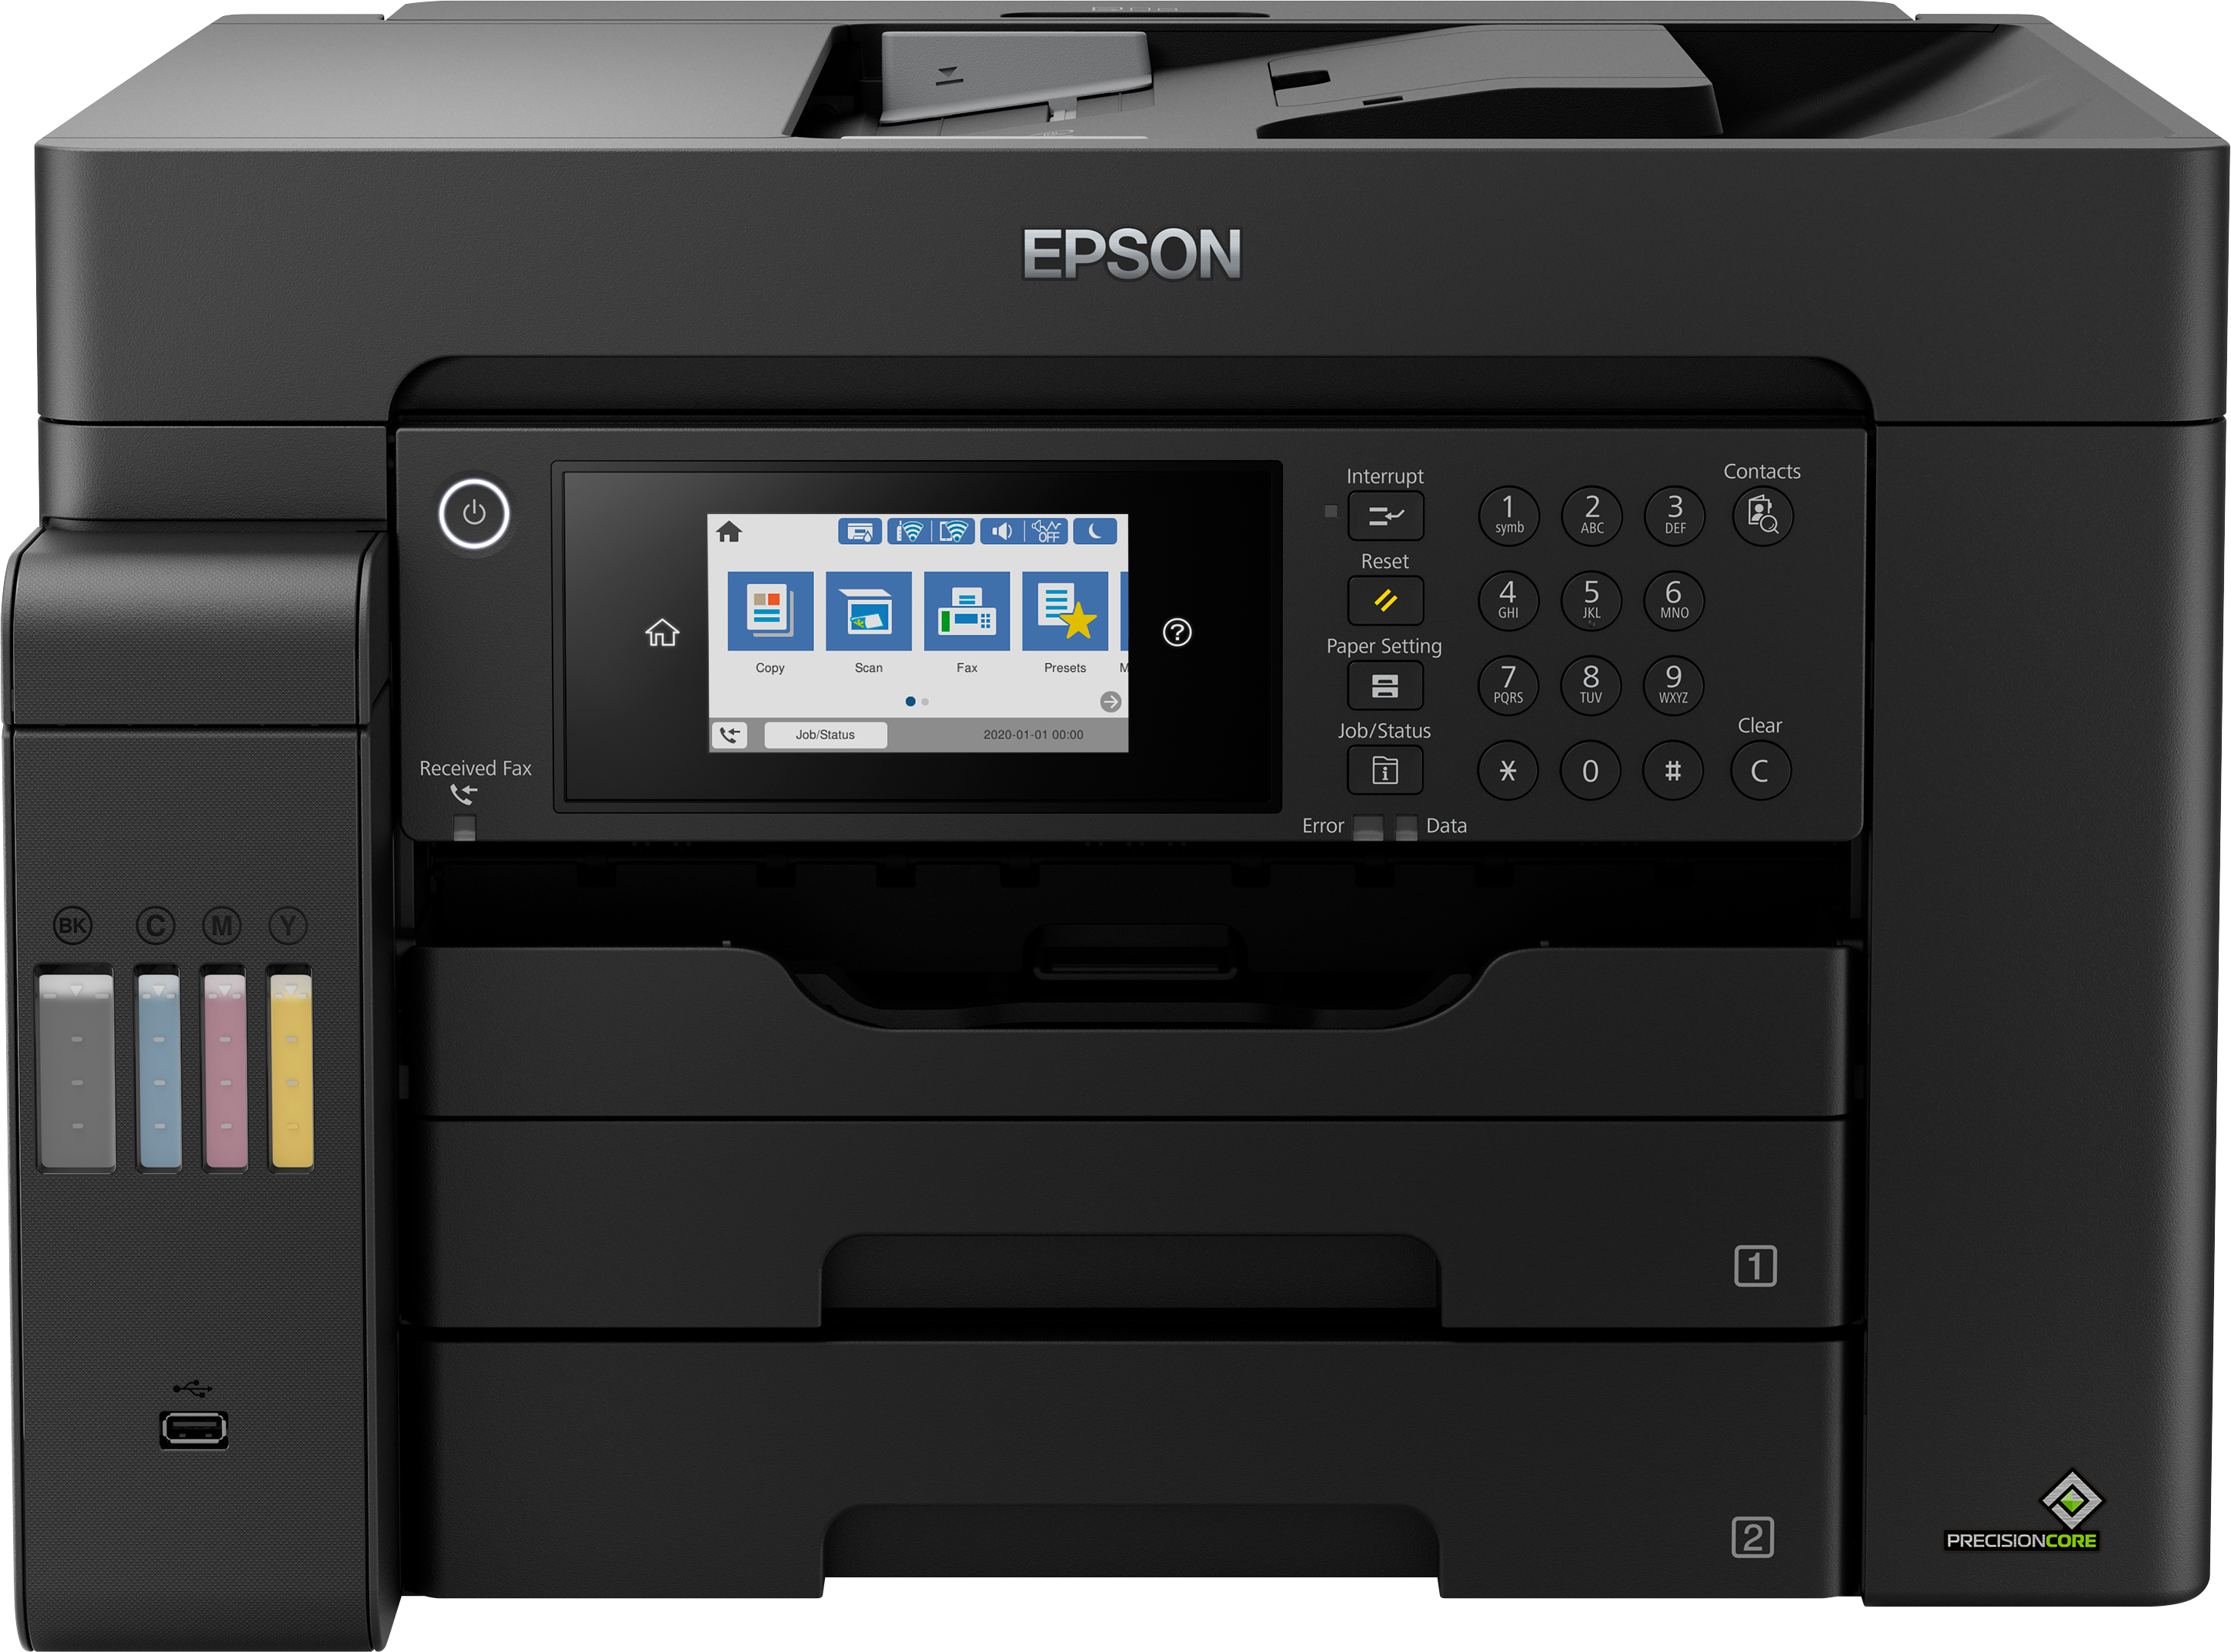 C11CH72502  Epson EcoTank L15150 A3 Wi-Fi Duplex All-in-One Ink